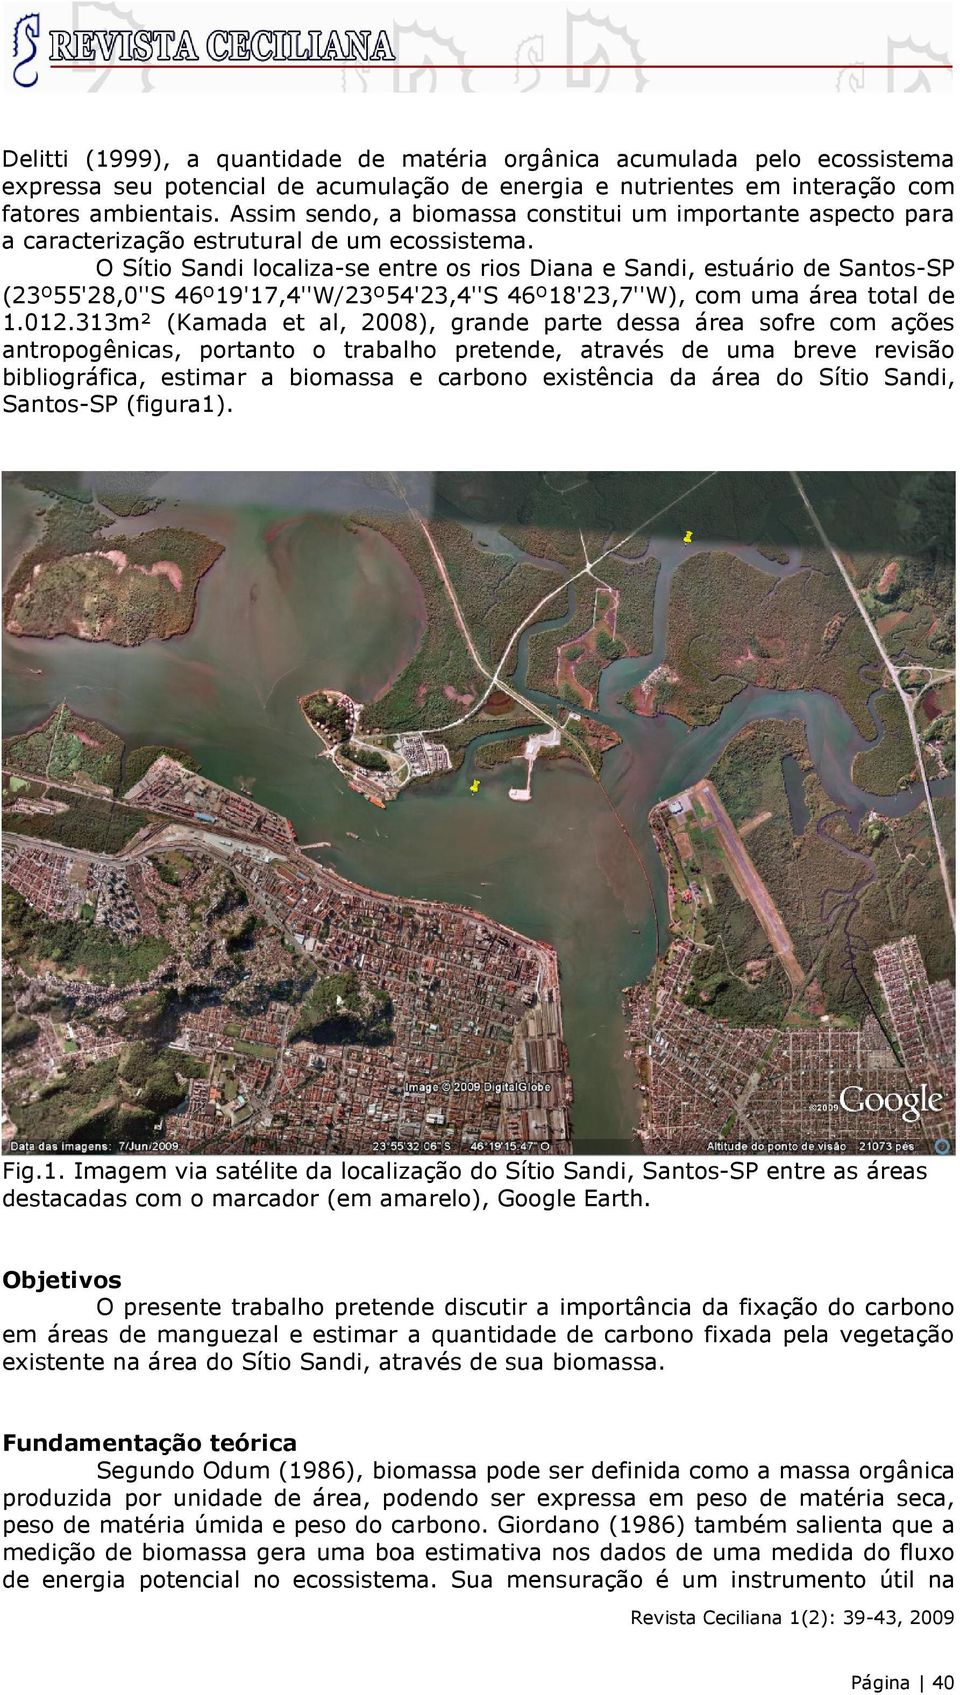 O Sítio Sandi localiza-se entre os rios Diana e Sandi, estuário de Santos-SP (23º55'28,0''S 46º19'17,4''W/23º54'23,4''S 46º18'23,7''W), com uma área total de 1.012.